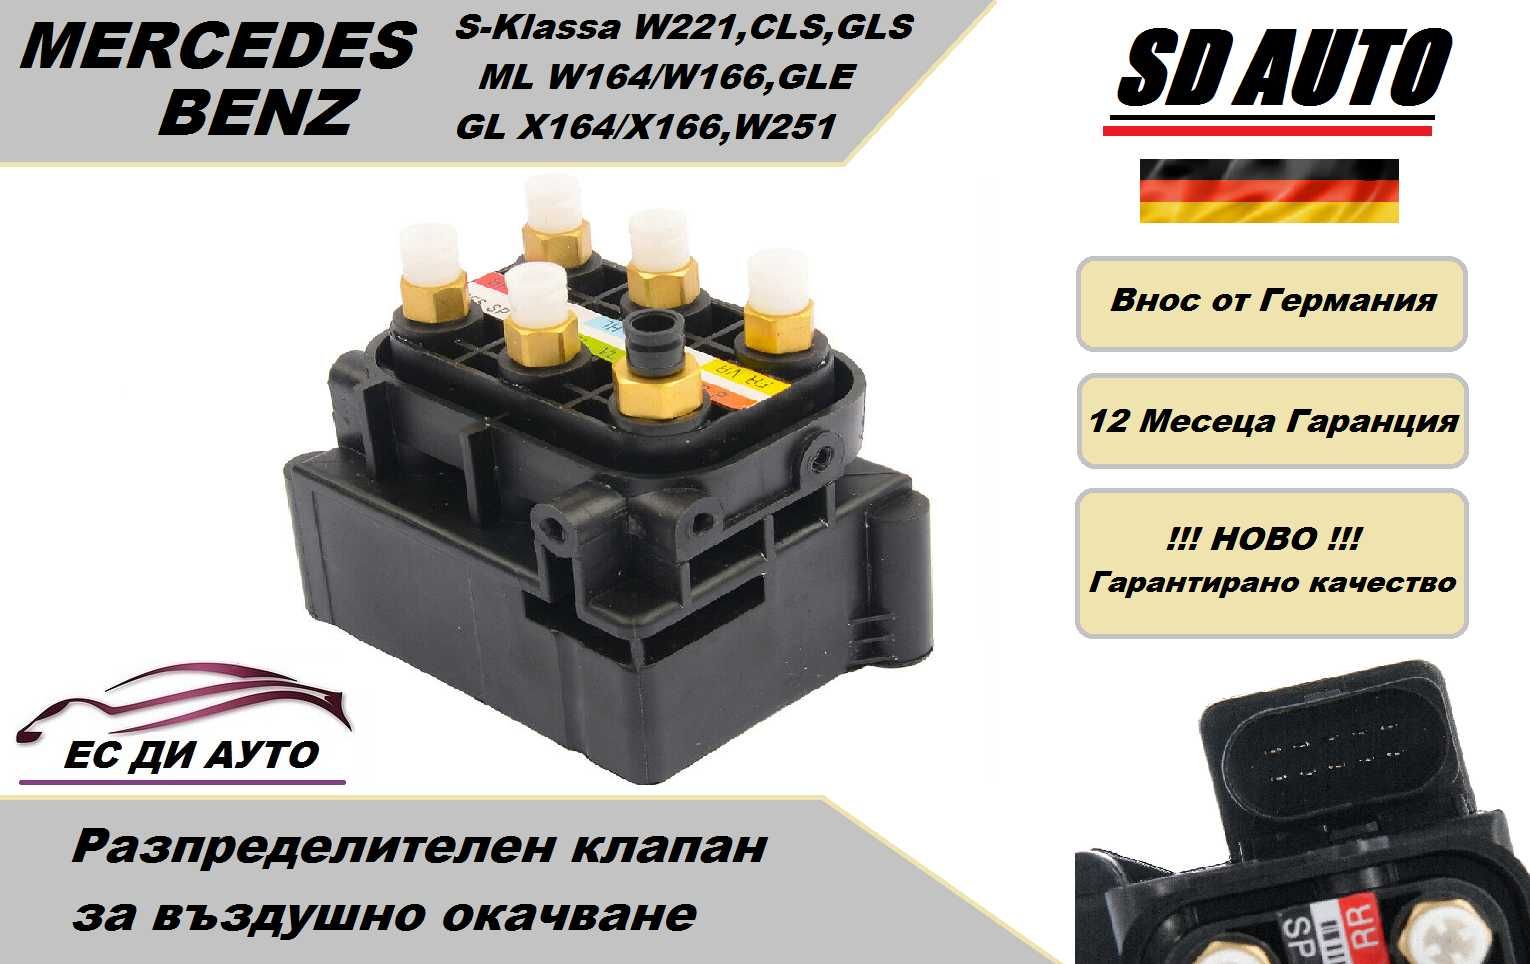 Клапан/Разпределител за въздушно окачване MERCEDES S-klasa W221,ML,GL